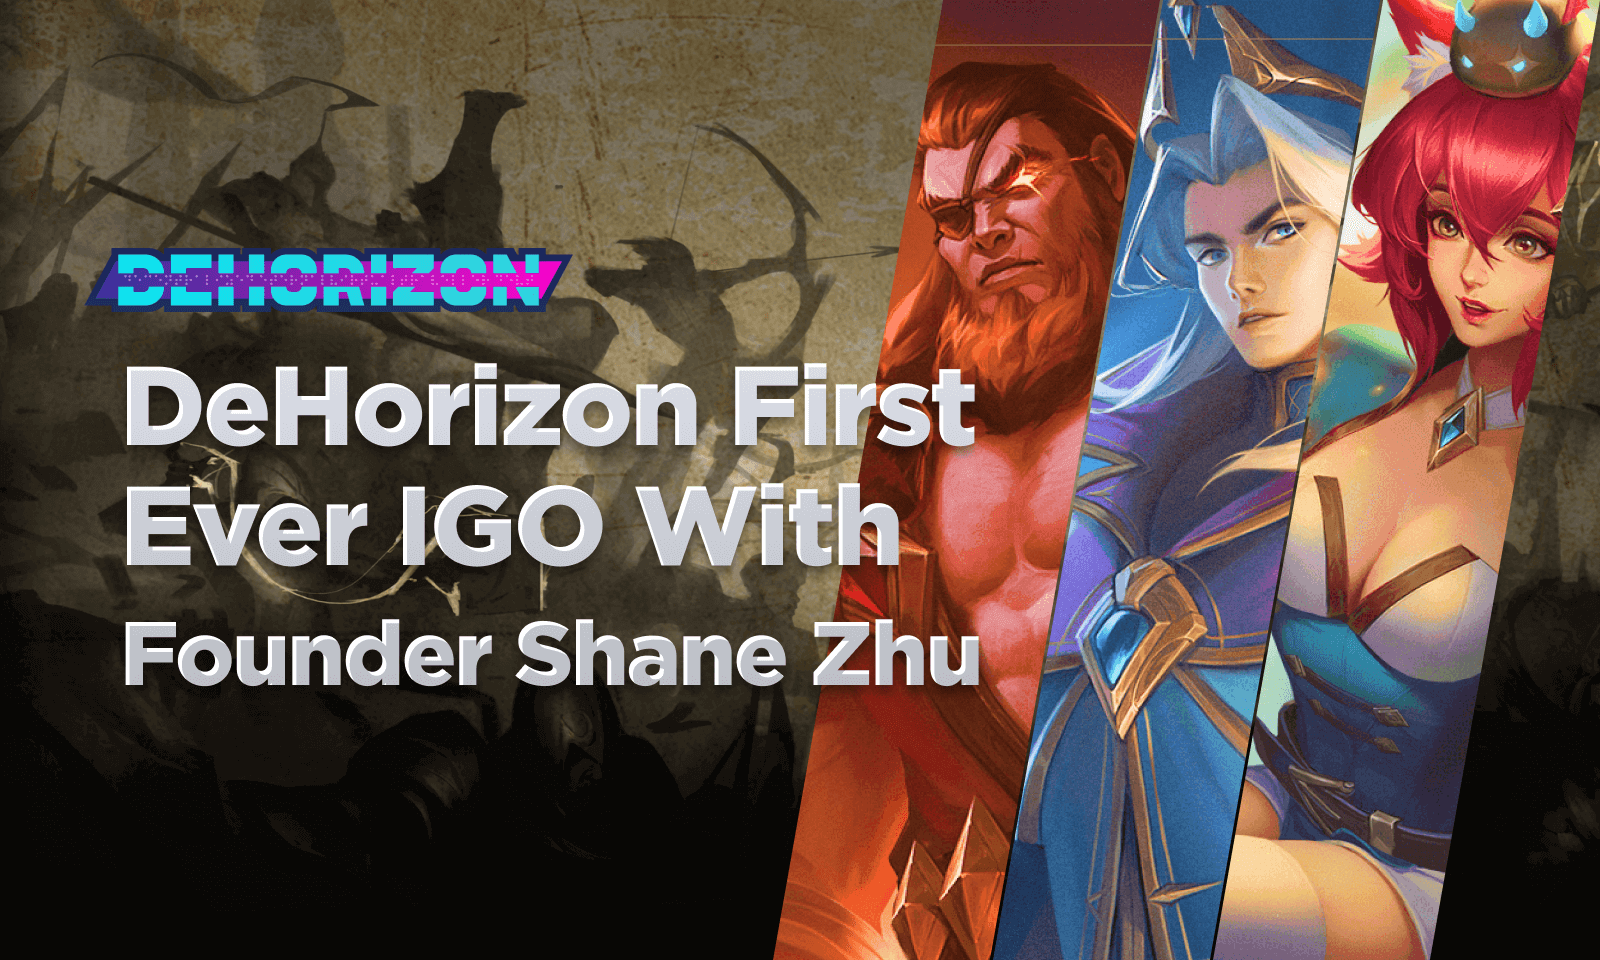 DeHorizon first ever IGO with Founder Shane Zhu